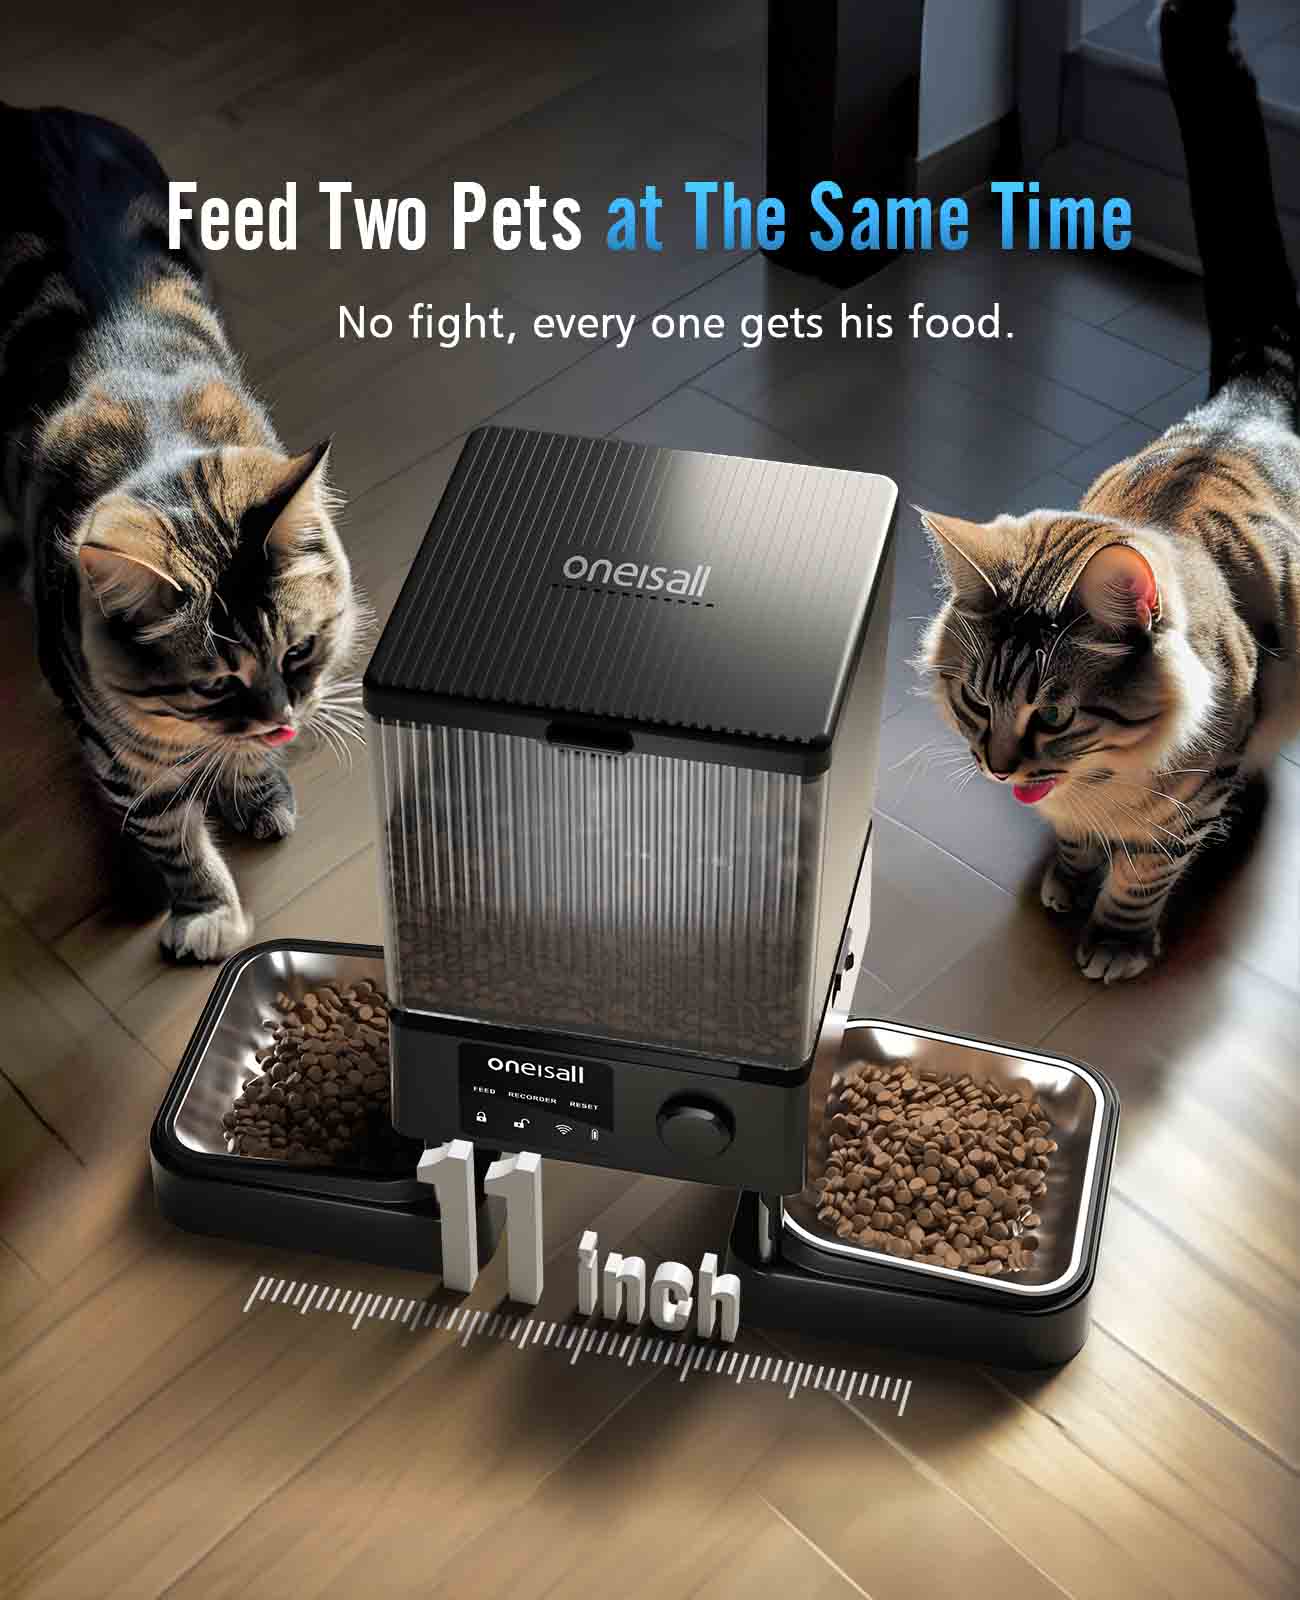 
                  
                    Oneisall Automatischer Katzenfutterspender mit 5G Wi-Fi, automatische Katzenfutterautomaten für 2 Katzen, 20 Tassen zeitgesteuerter Trockenfutterspender mit APP-Steuerung
                  
                